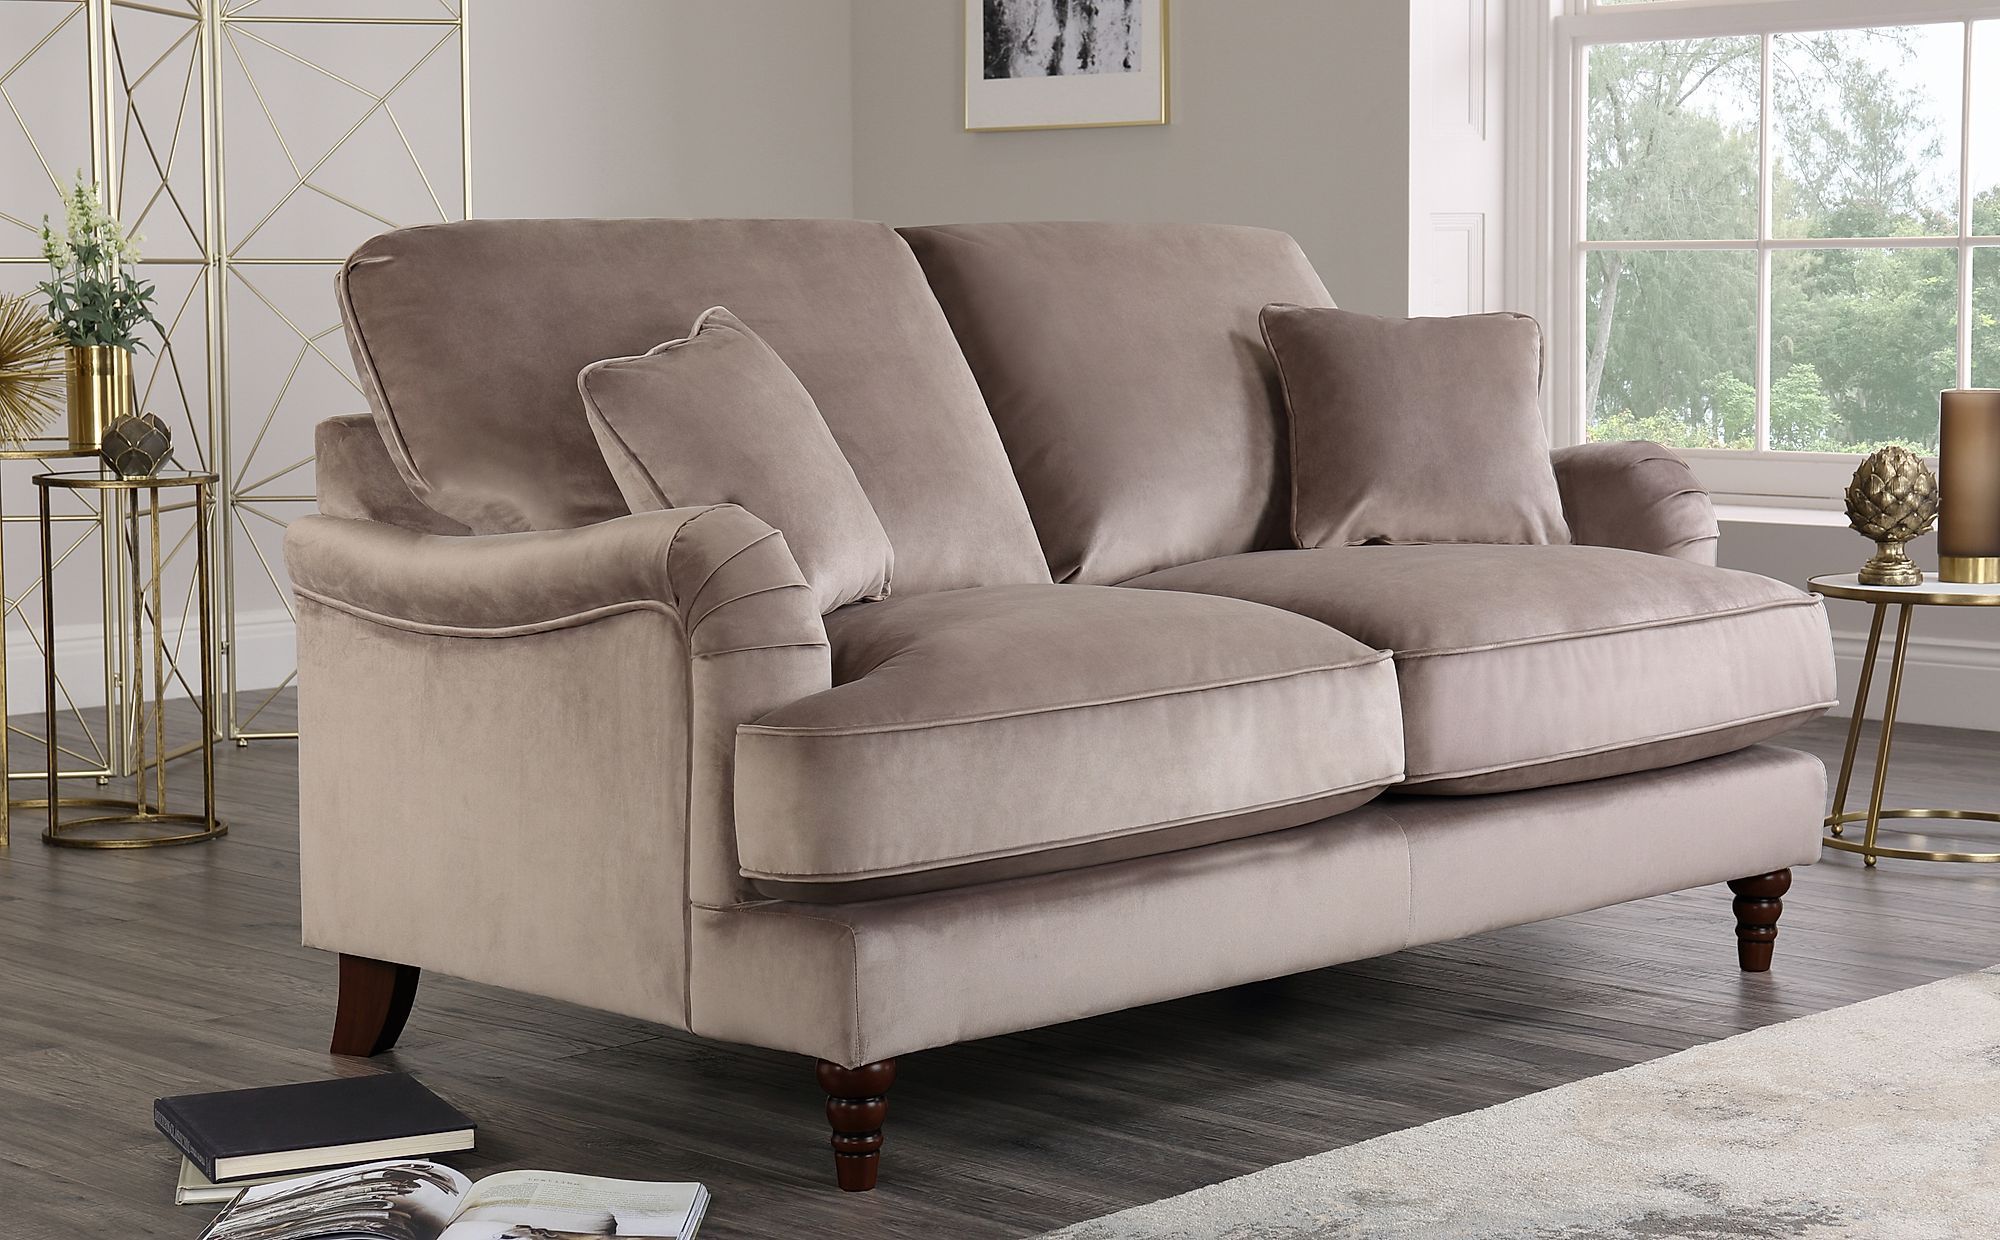 Charleston Mink Velvet 2 Seater Sofa | Furniture Choice Inside 2 Seater Black Velvet Sofa Beds (Gallery 6 of 20)